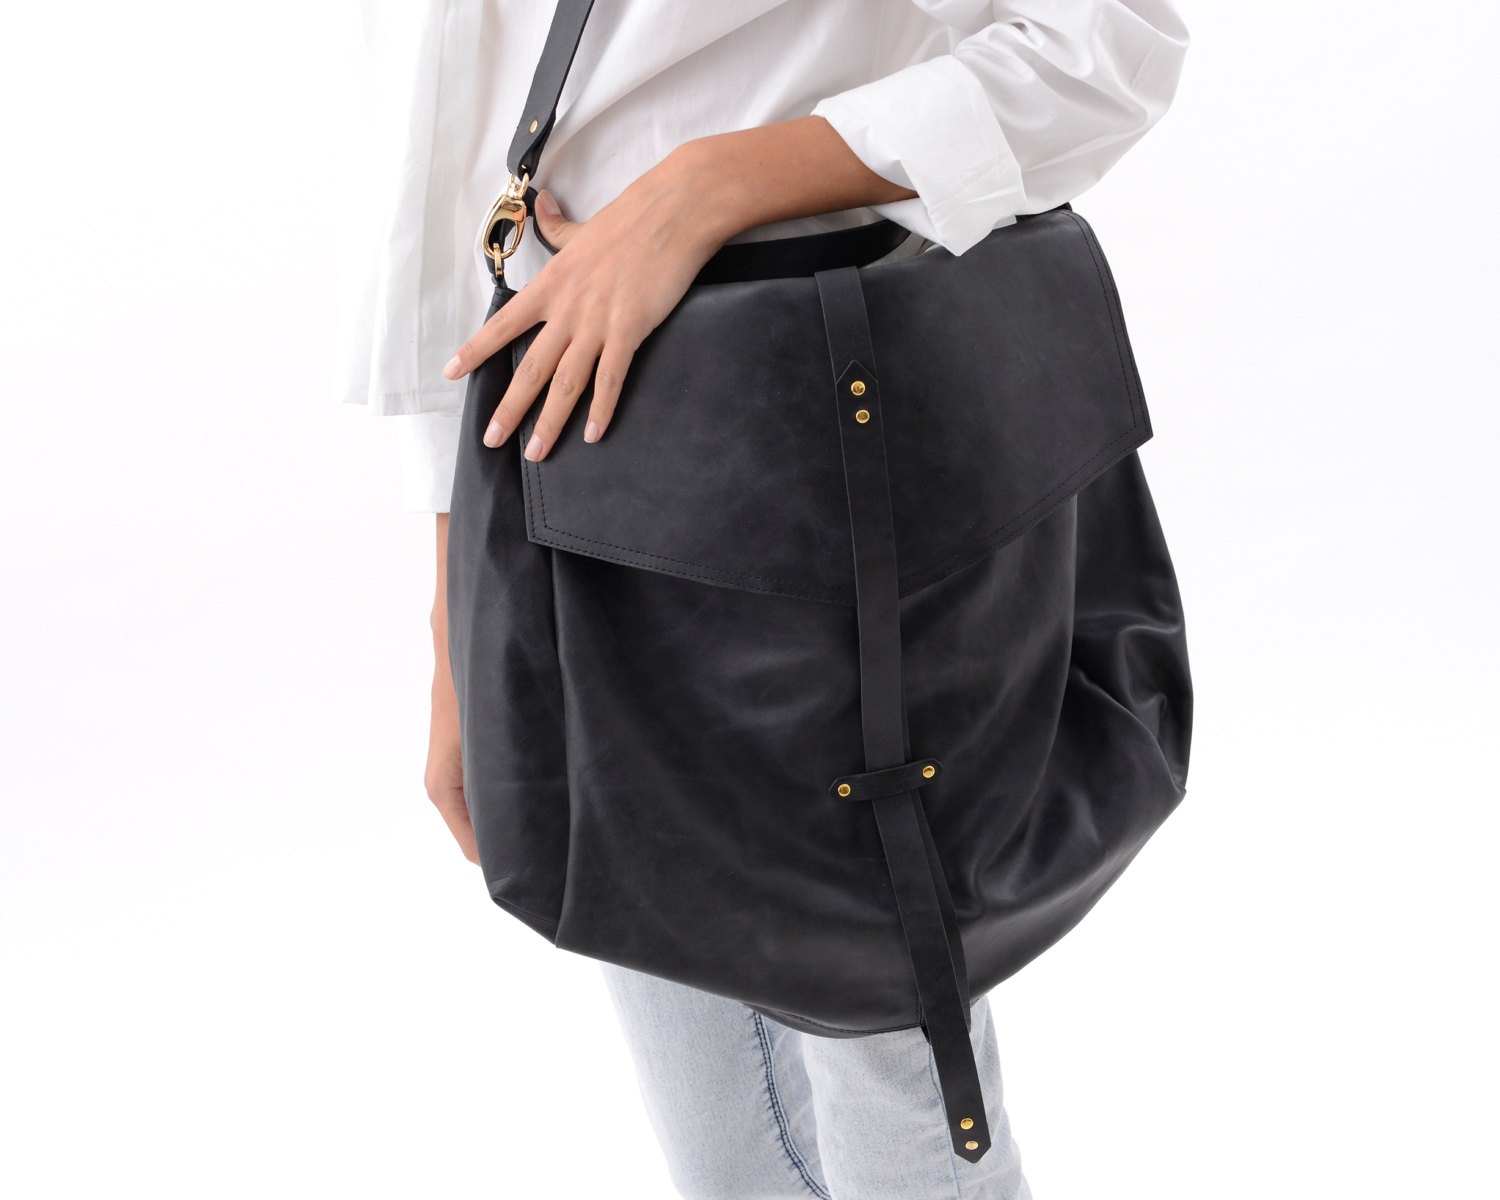 Oversized Black Leather Hobo Bag for Women Large Handmade